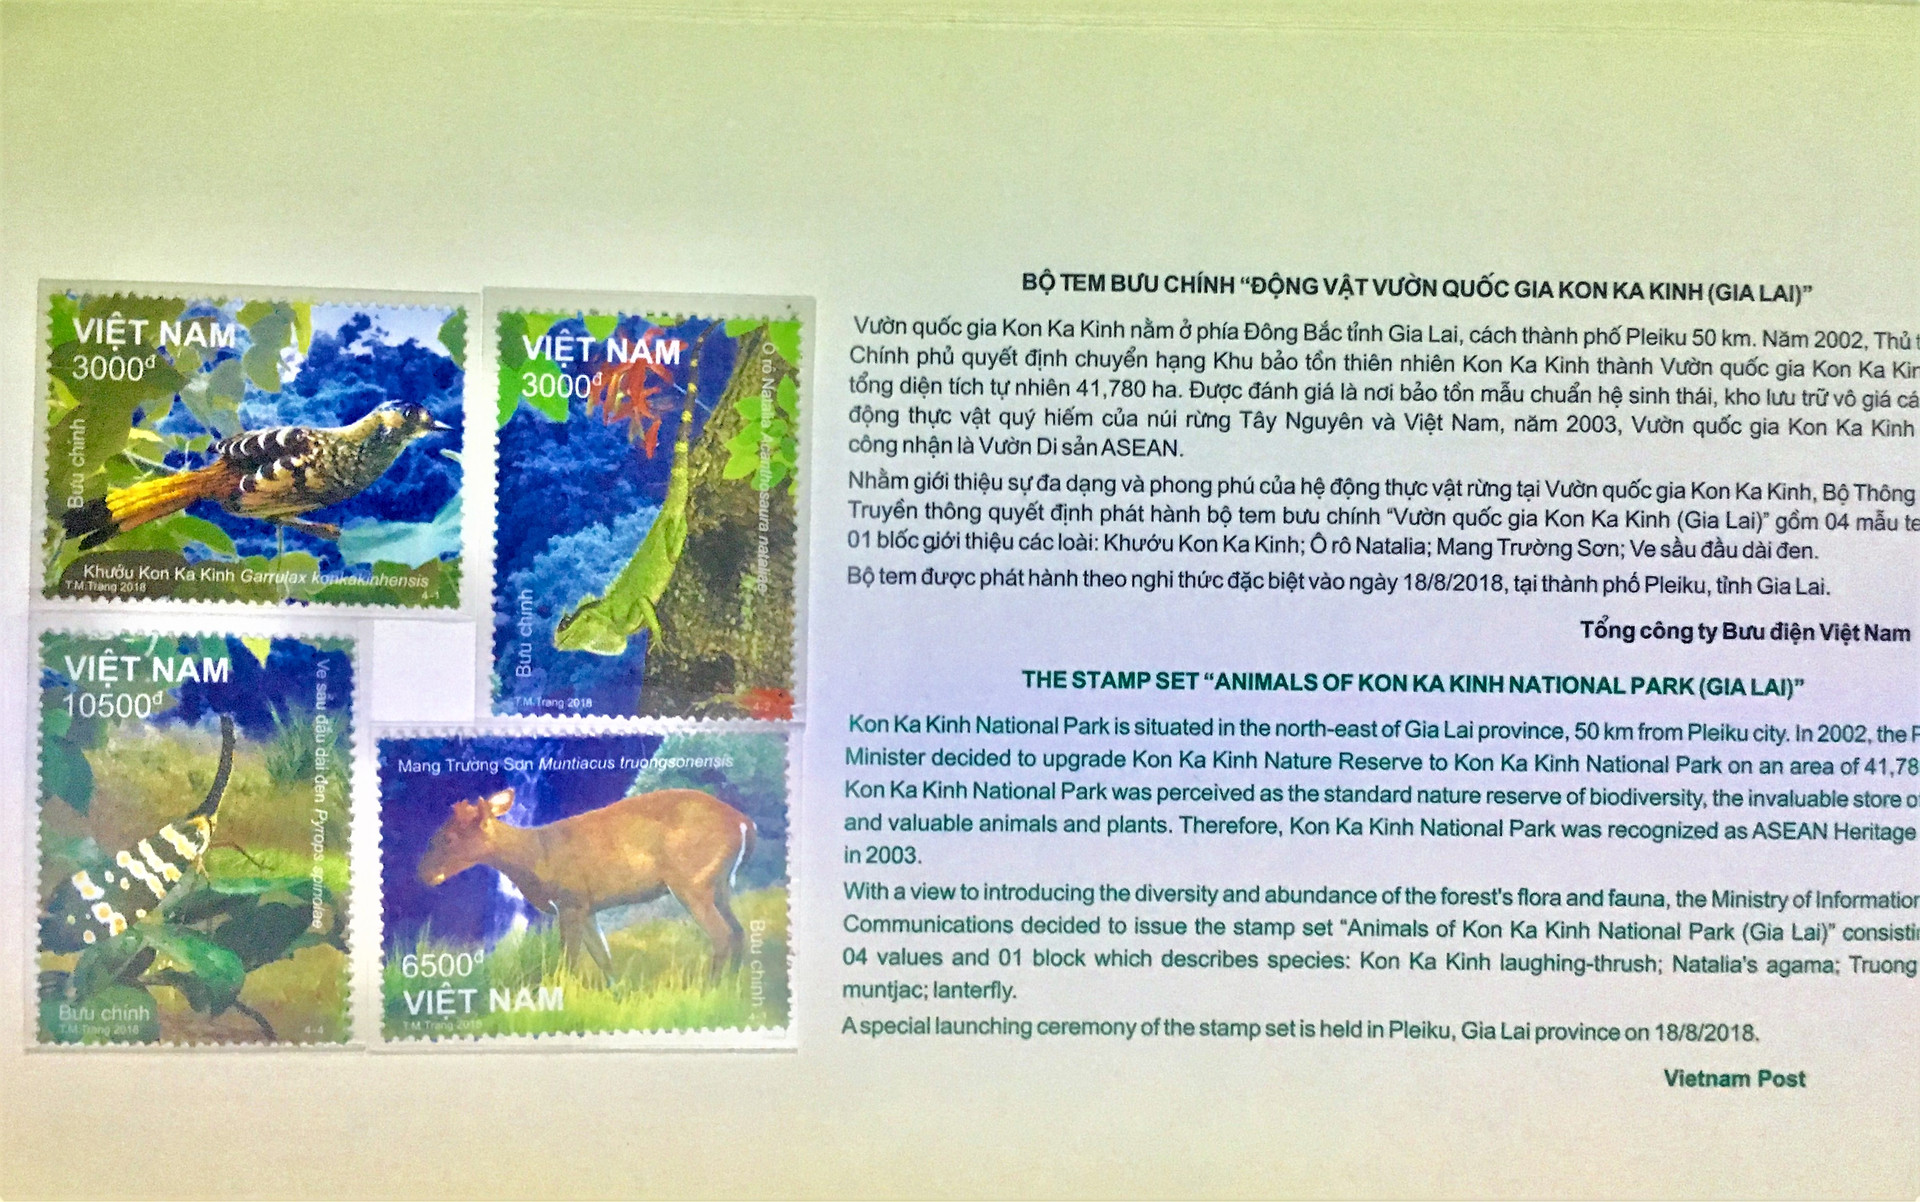 Phát hành bộ tem đặc biệt “Động vật Vườn quốc gia (VQG) Kon Ka Kinh”